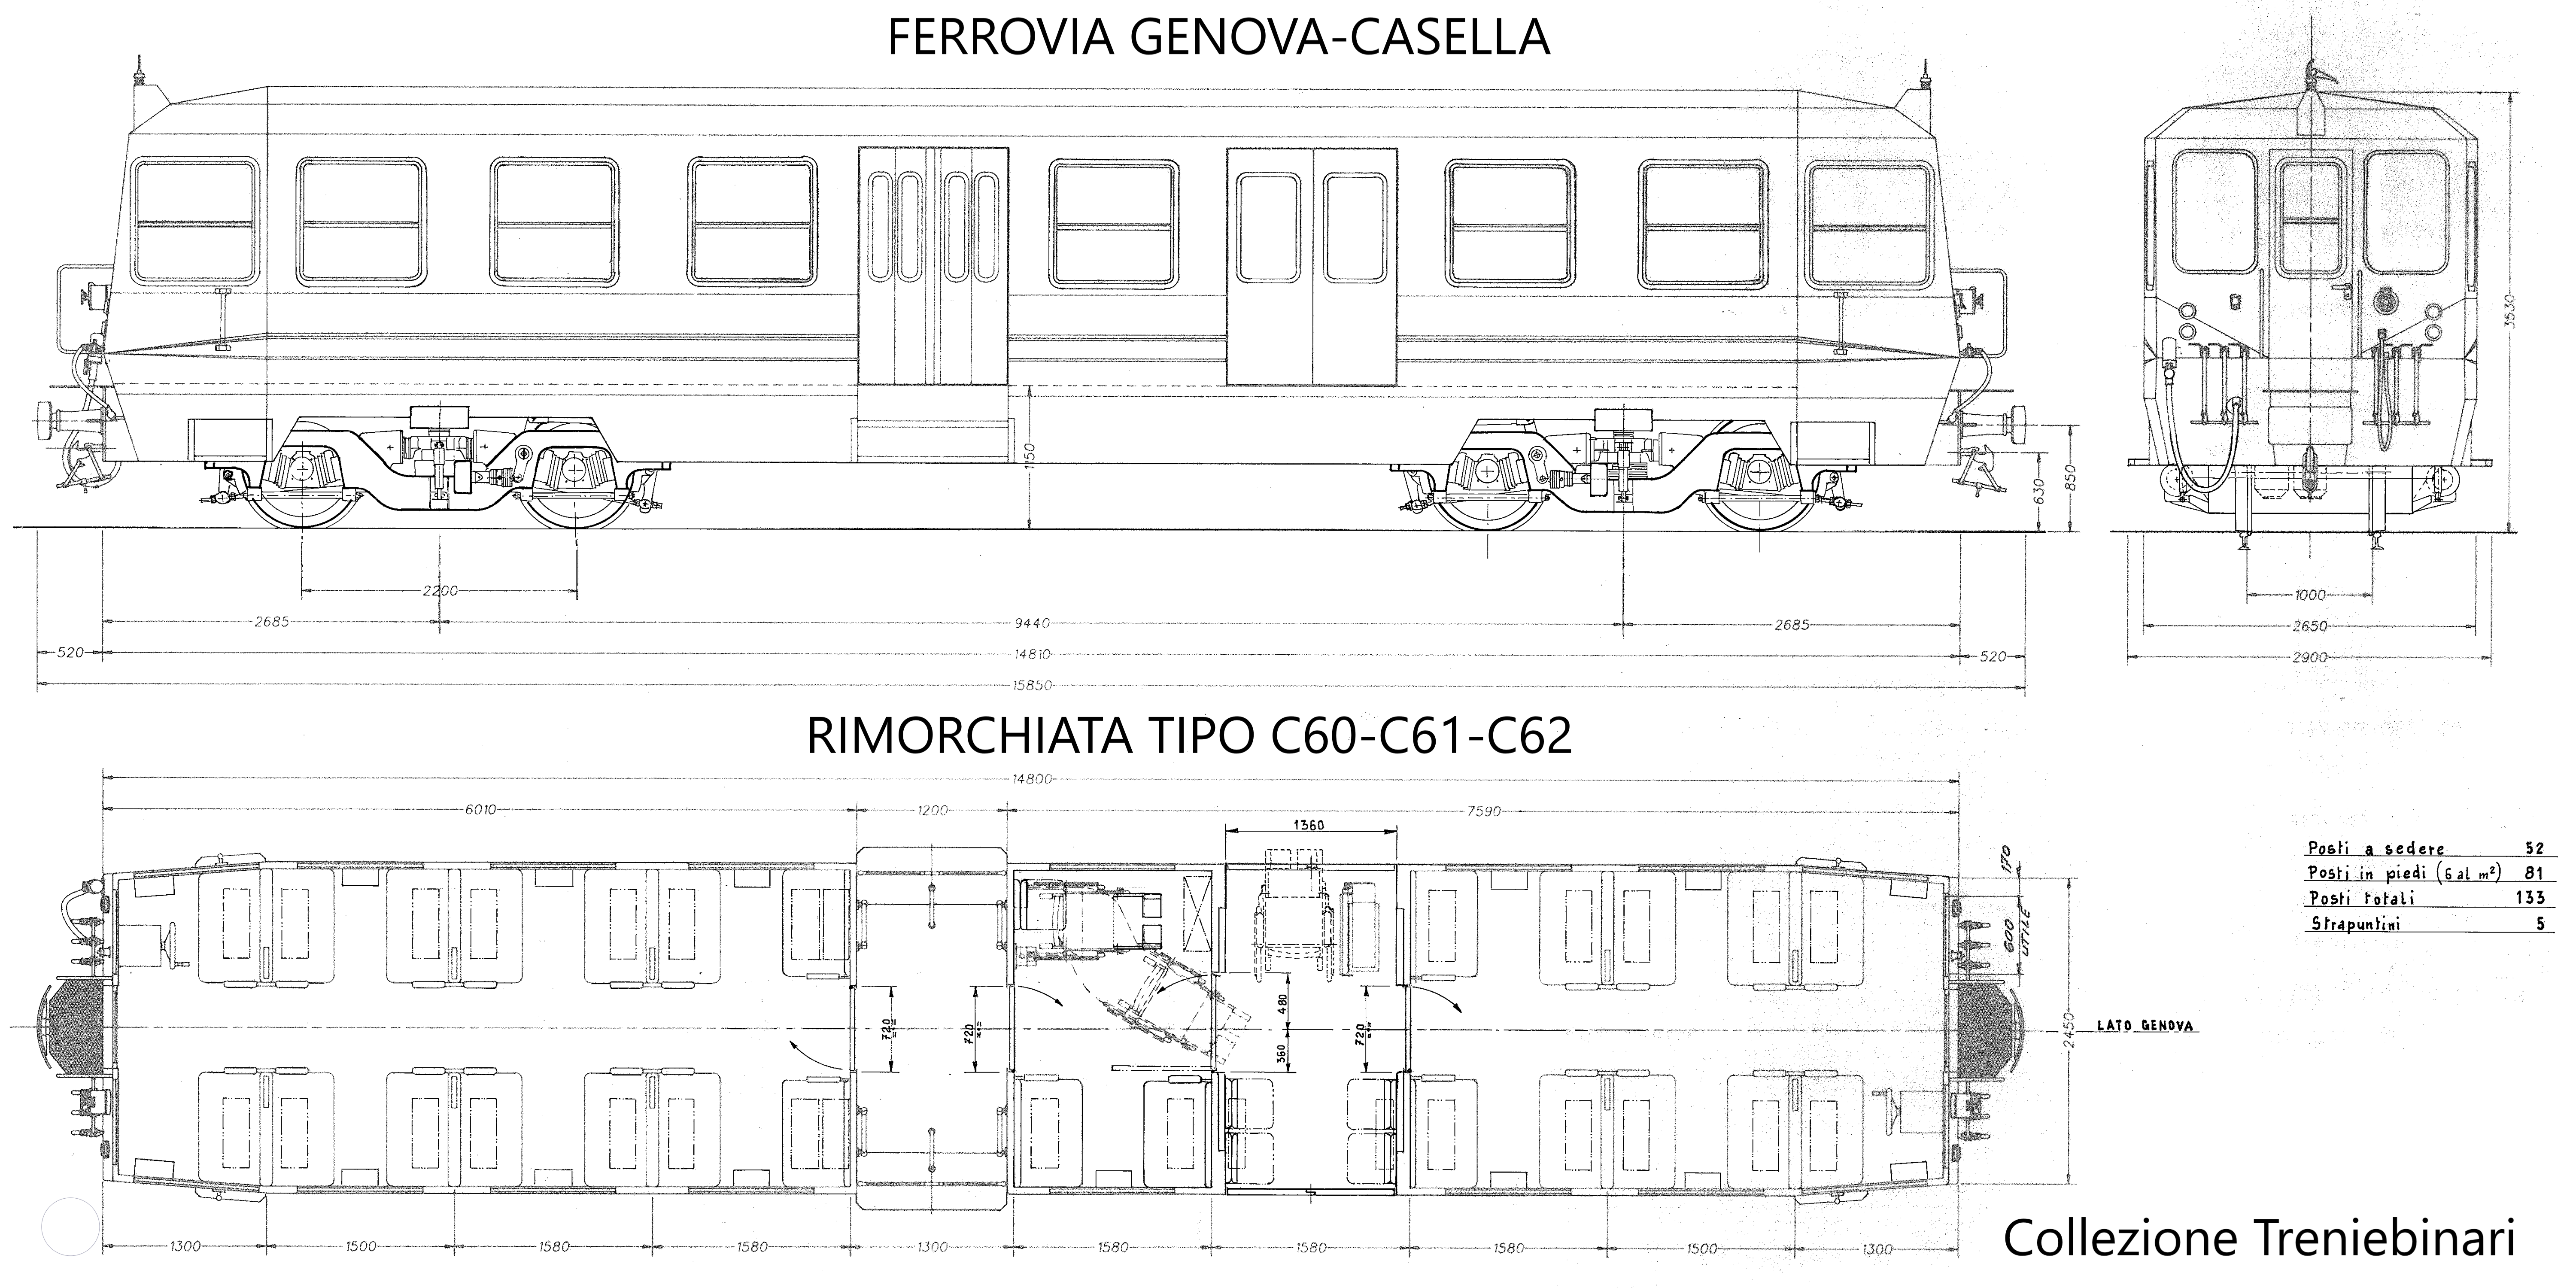 Rimorchiata FIREMA per Ferrovia Genova-Casella